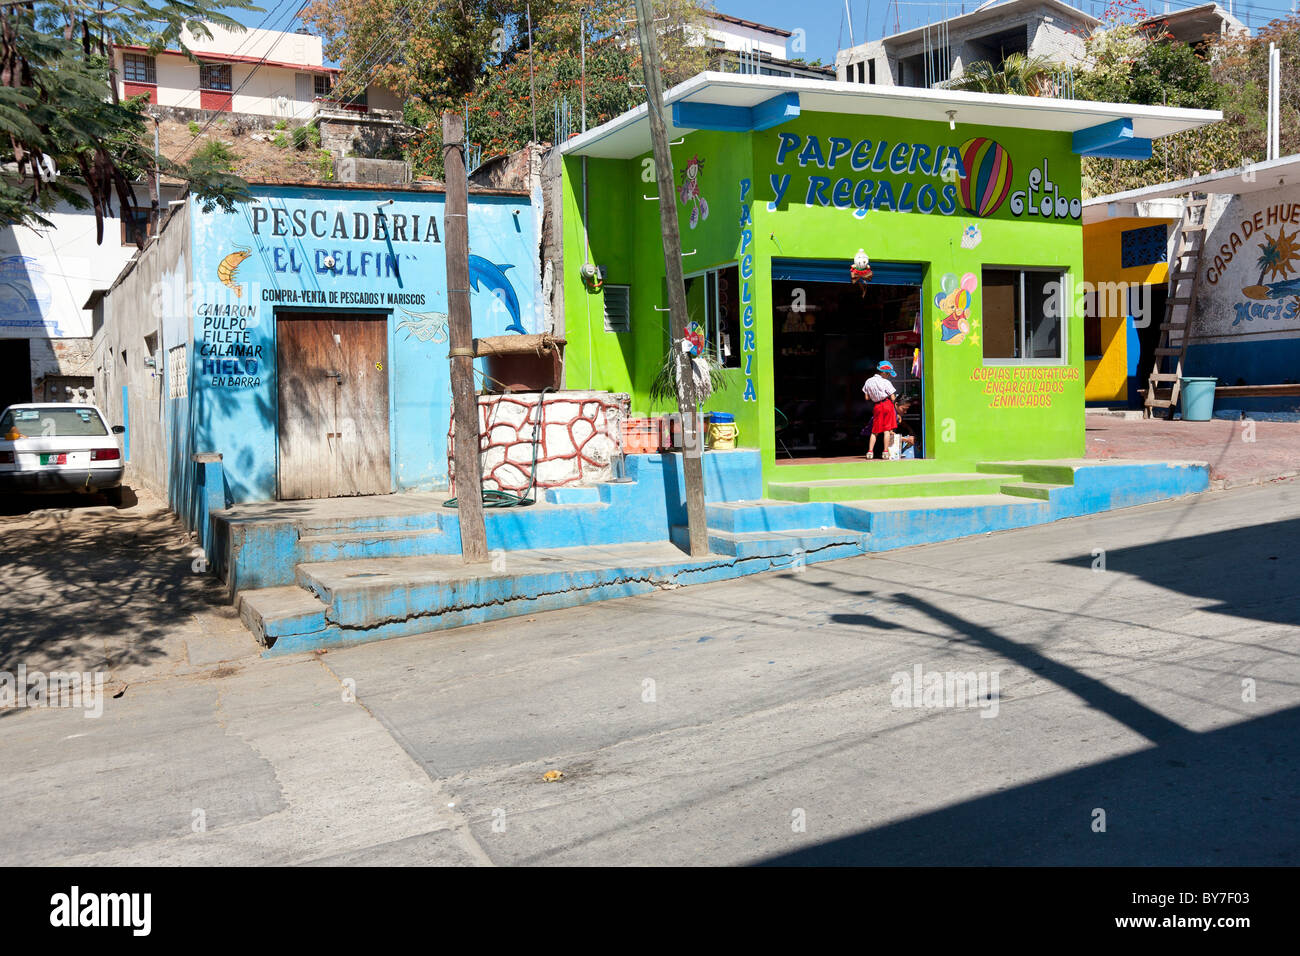 Dos pequeñas tiendas pintadas en tonos brillantes de verde lima y turquesa compiten por la atención en una calle de Puerto Angel, México Foto de stock